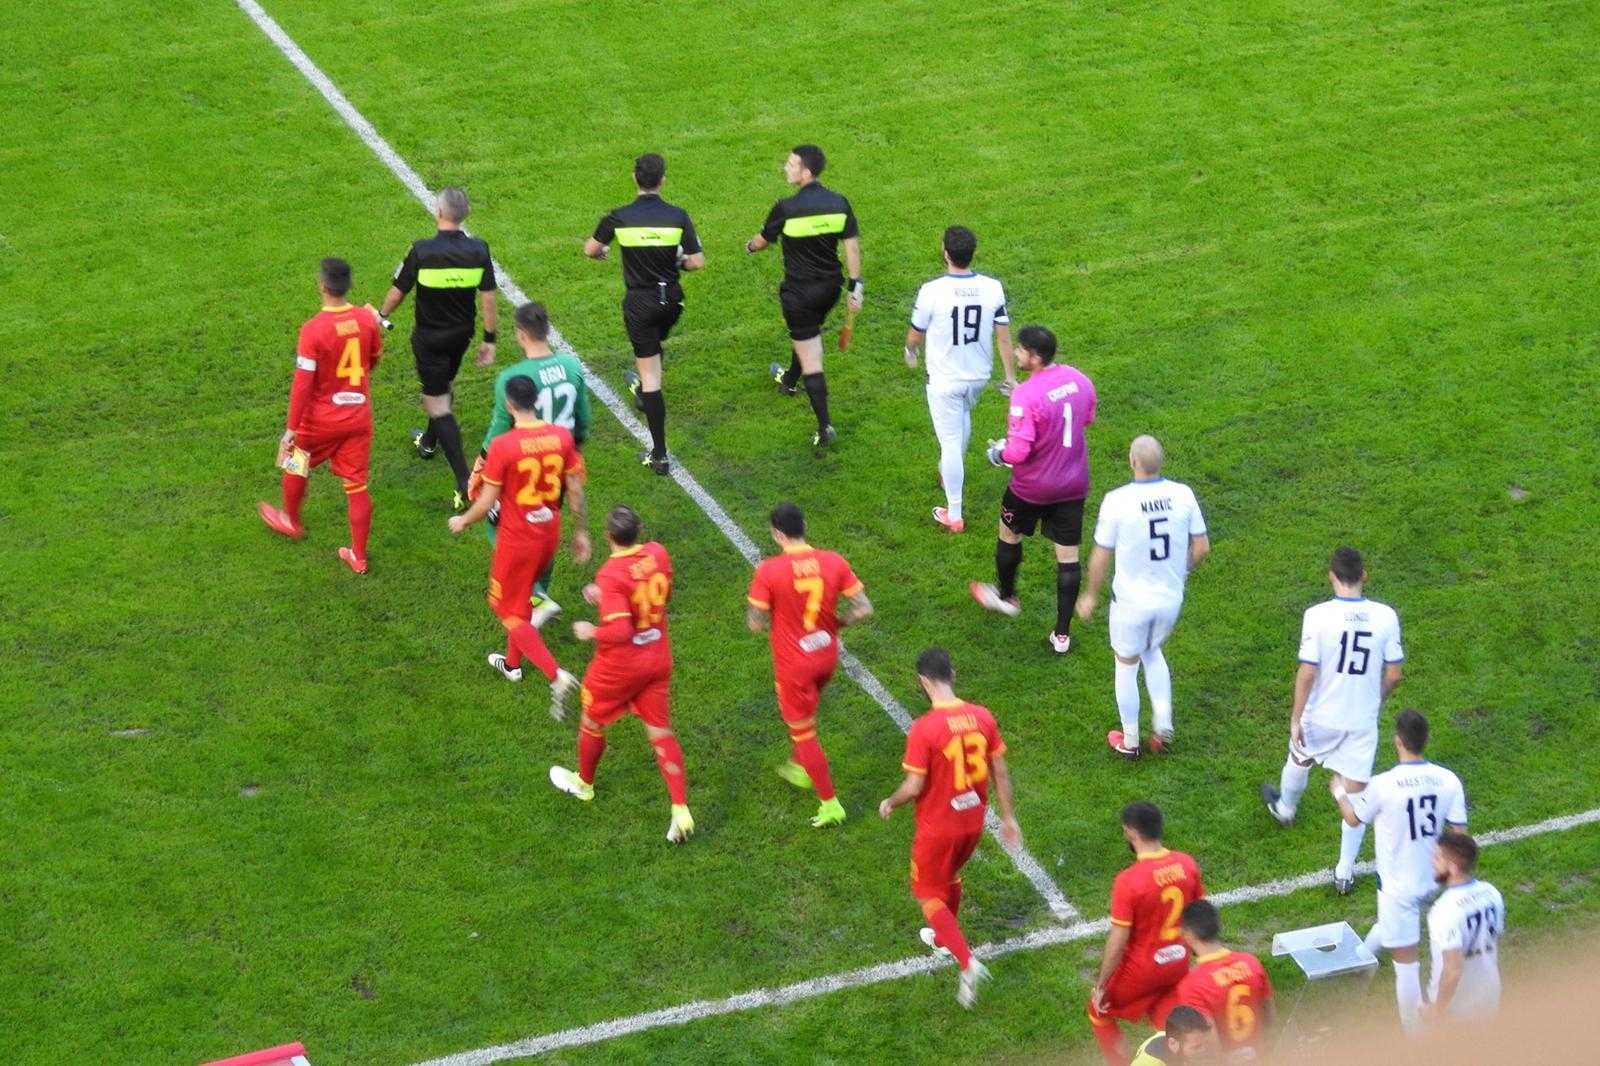 Catanzaro-Bisceglie 1-1, i giallorossi non vanno oltre il pareggio in rimonta (Foto e highlights)